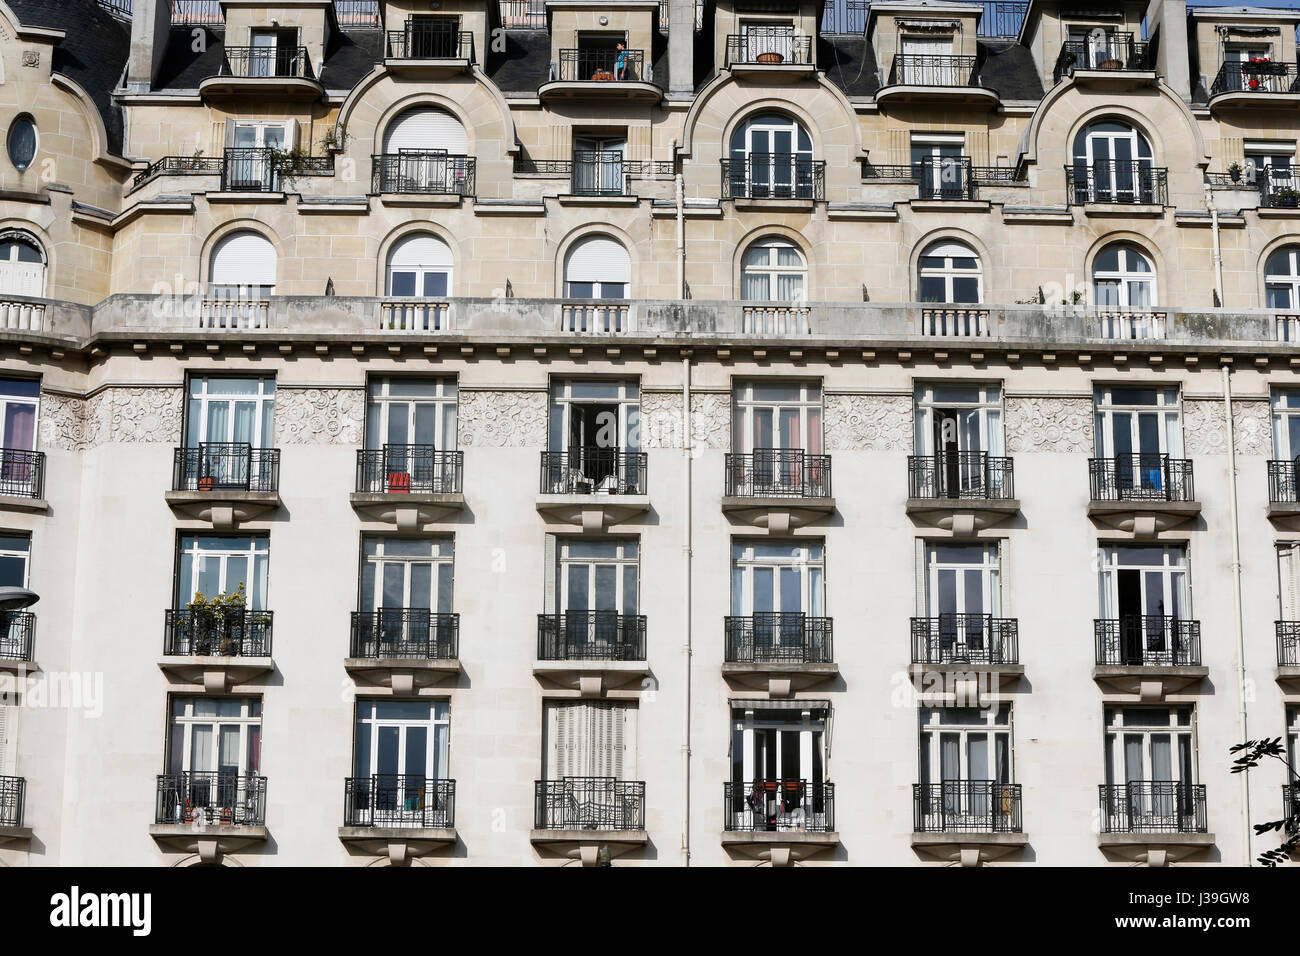 Building in paris. Stock Photo